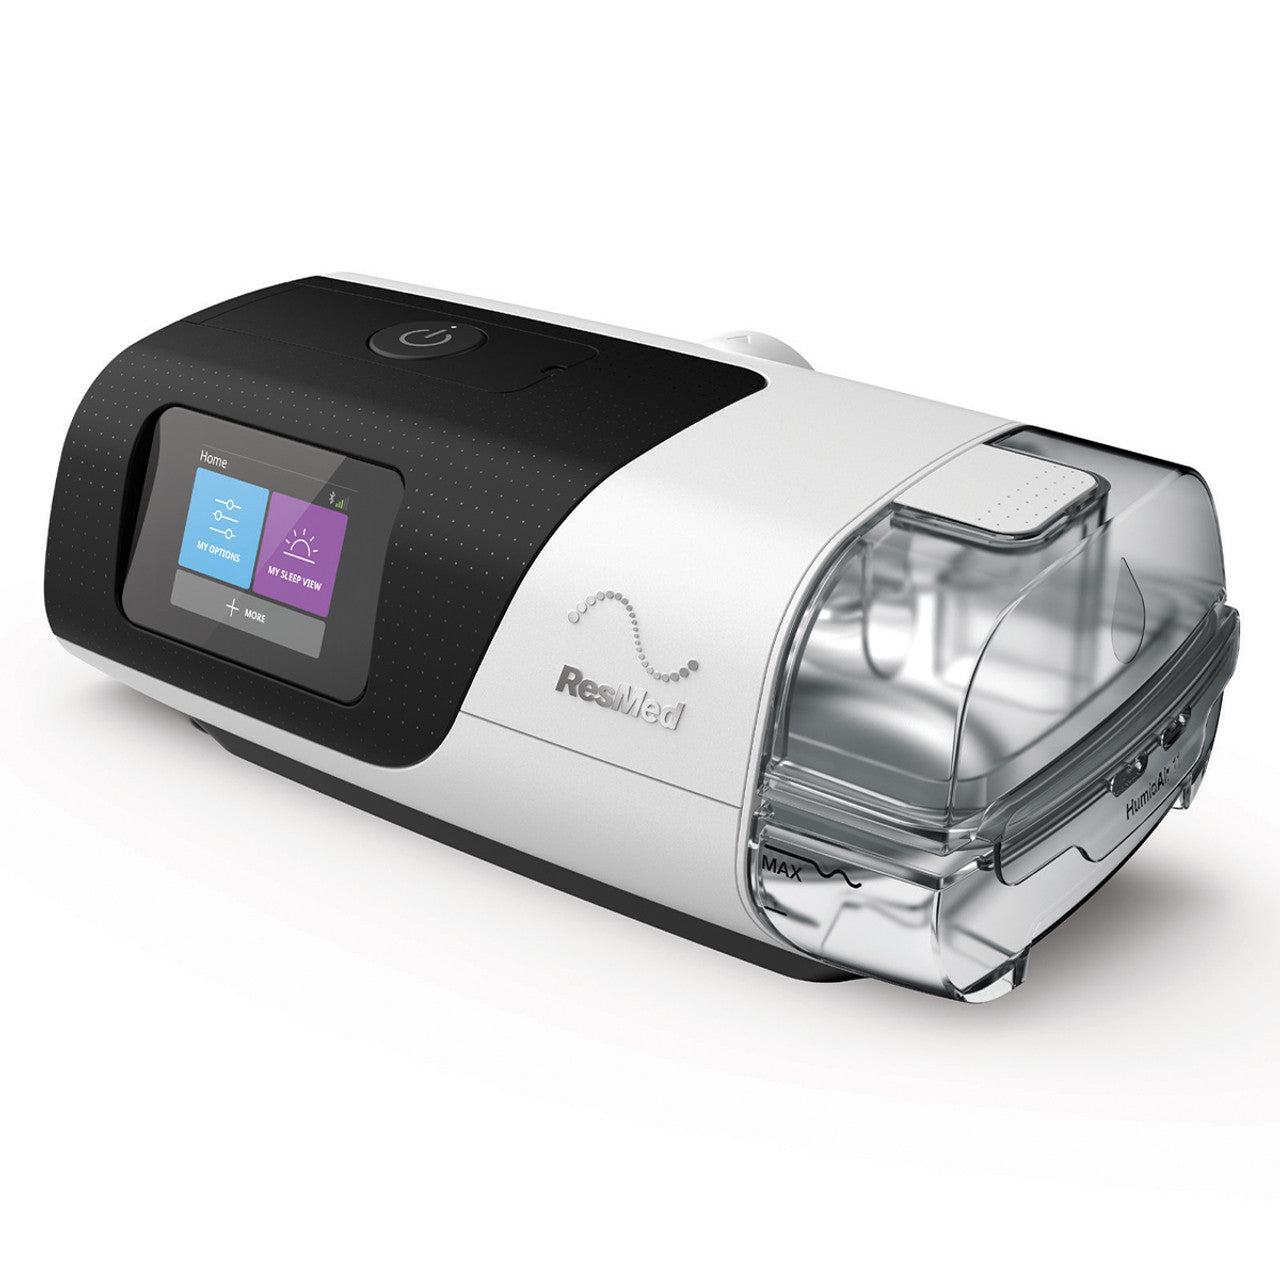 S11 appareil PPC autopiloté dédié au traitement de l'apnée du sommeil